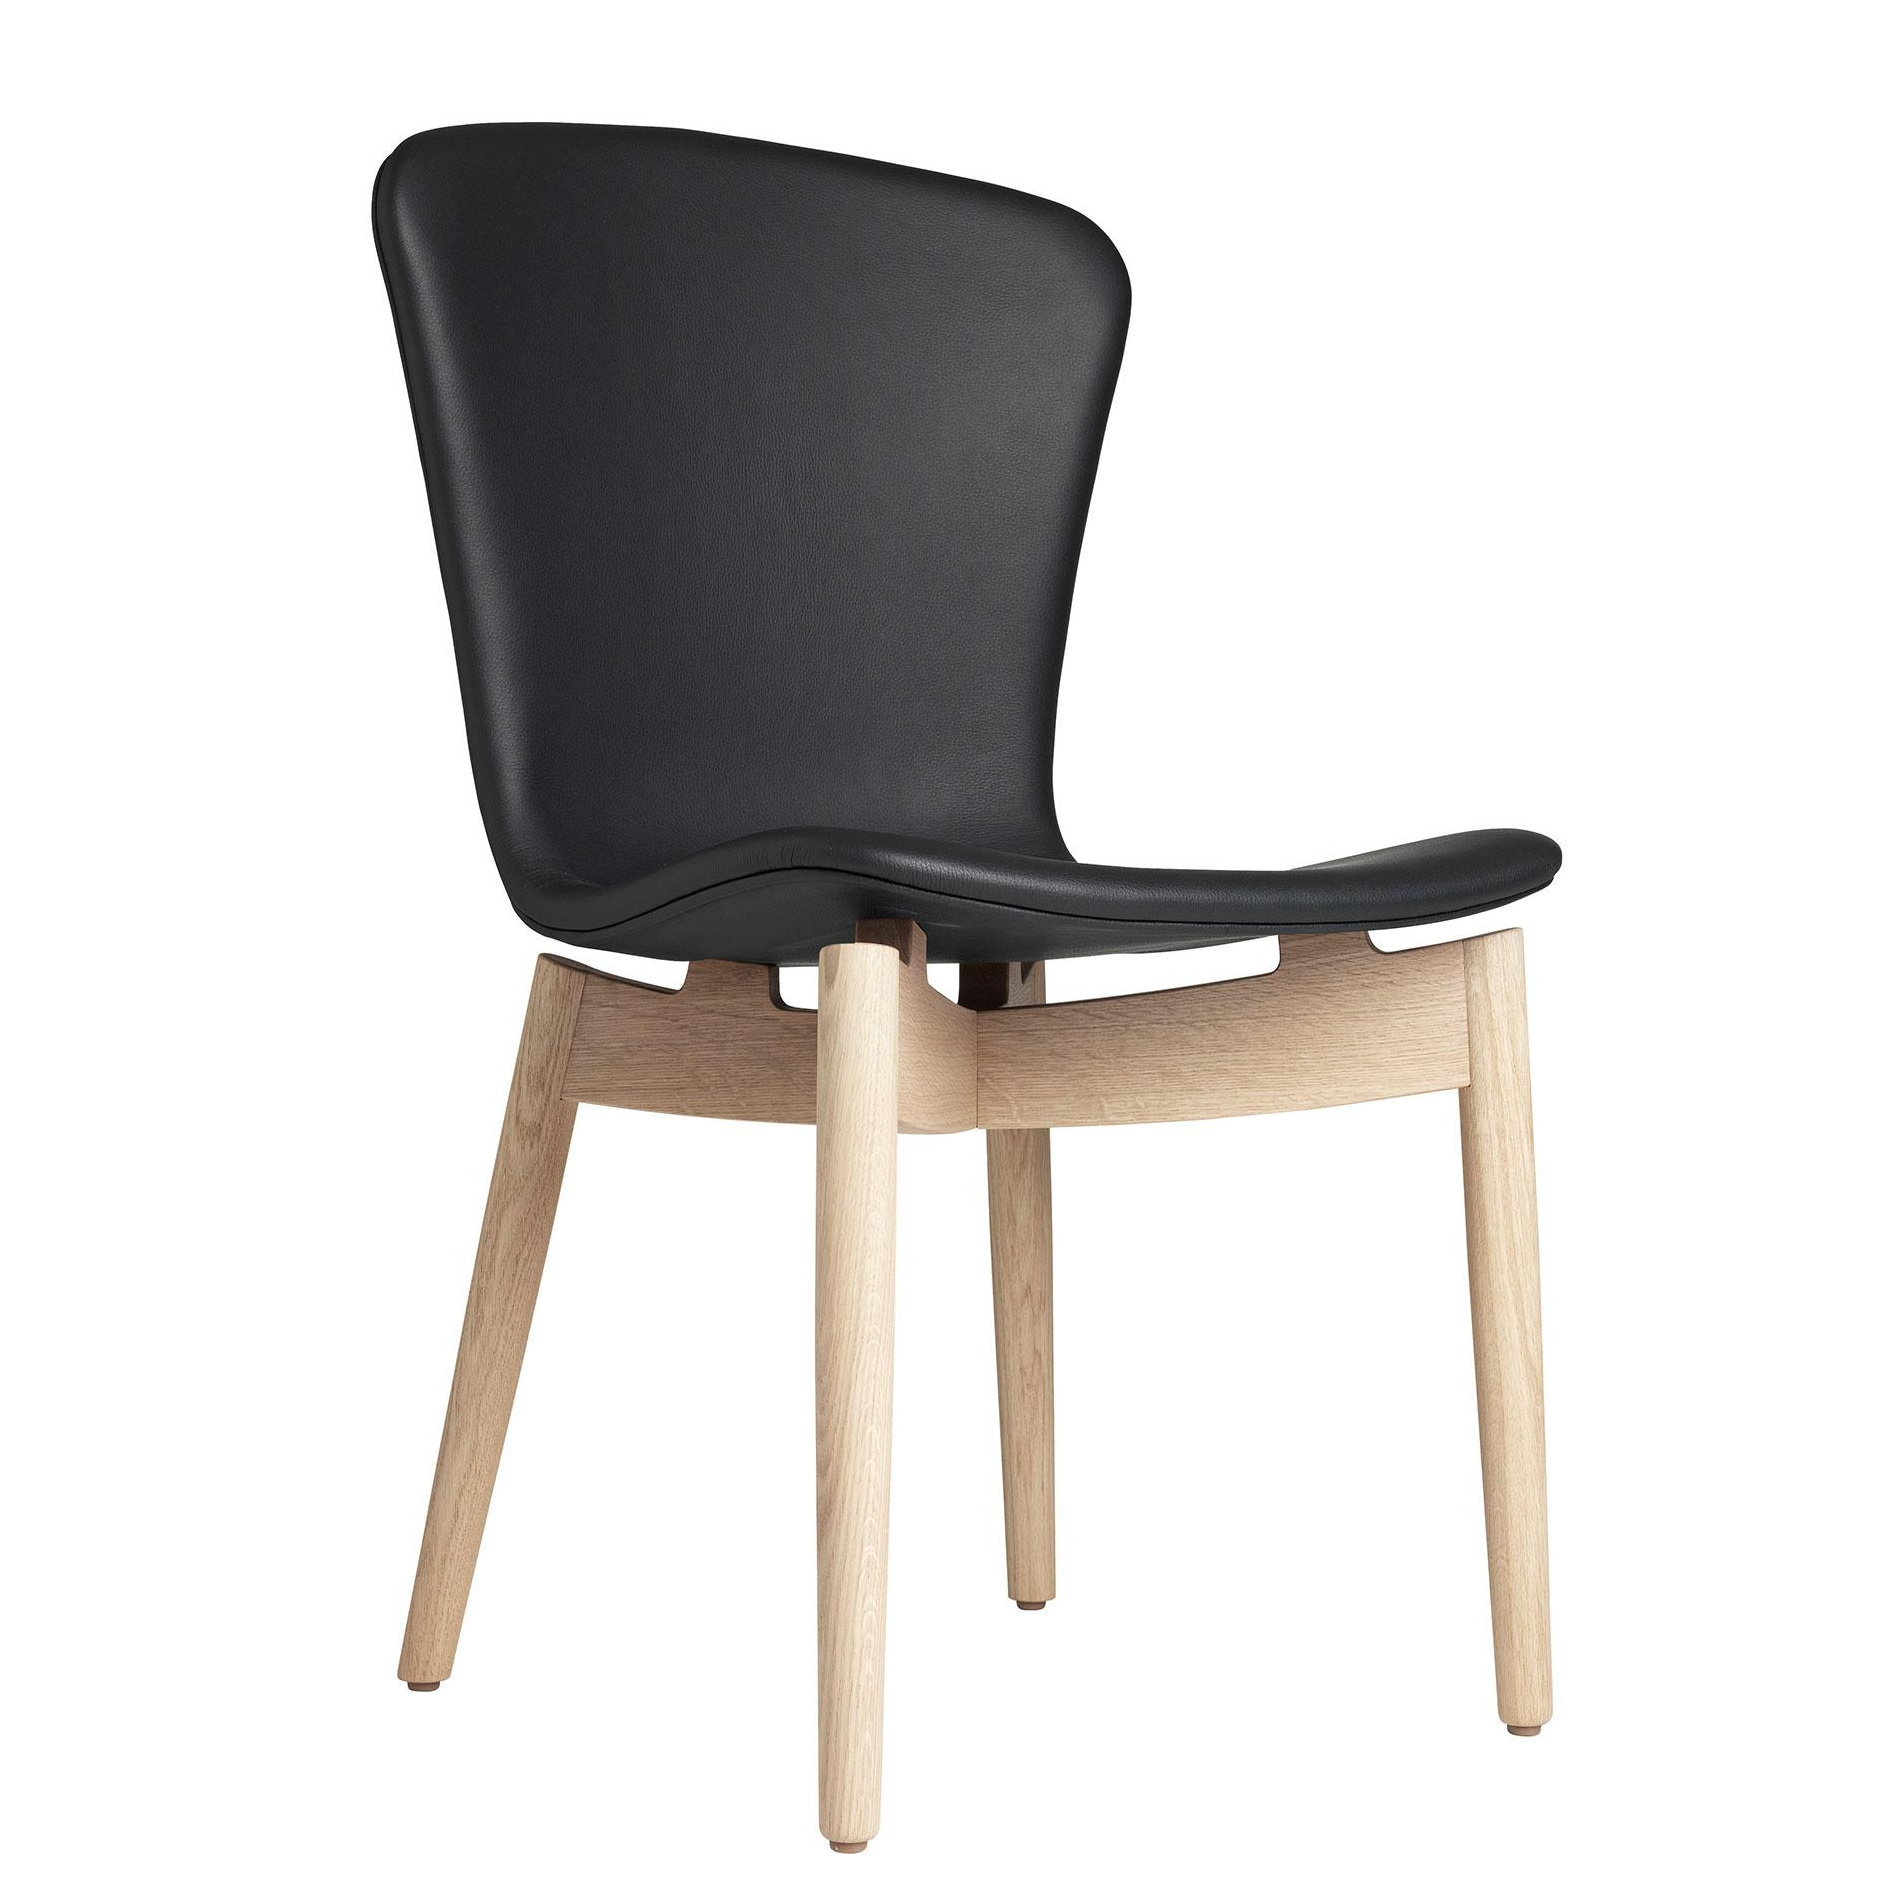 Mater - Shell Stuhl Gestell Eiche matt lackiert - schwarz/Sitz Ultra Leder/Füße Eiche matt lackiert/BxHxT 49x87x57cm von Mater